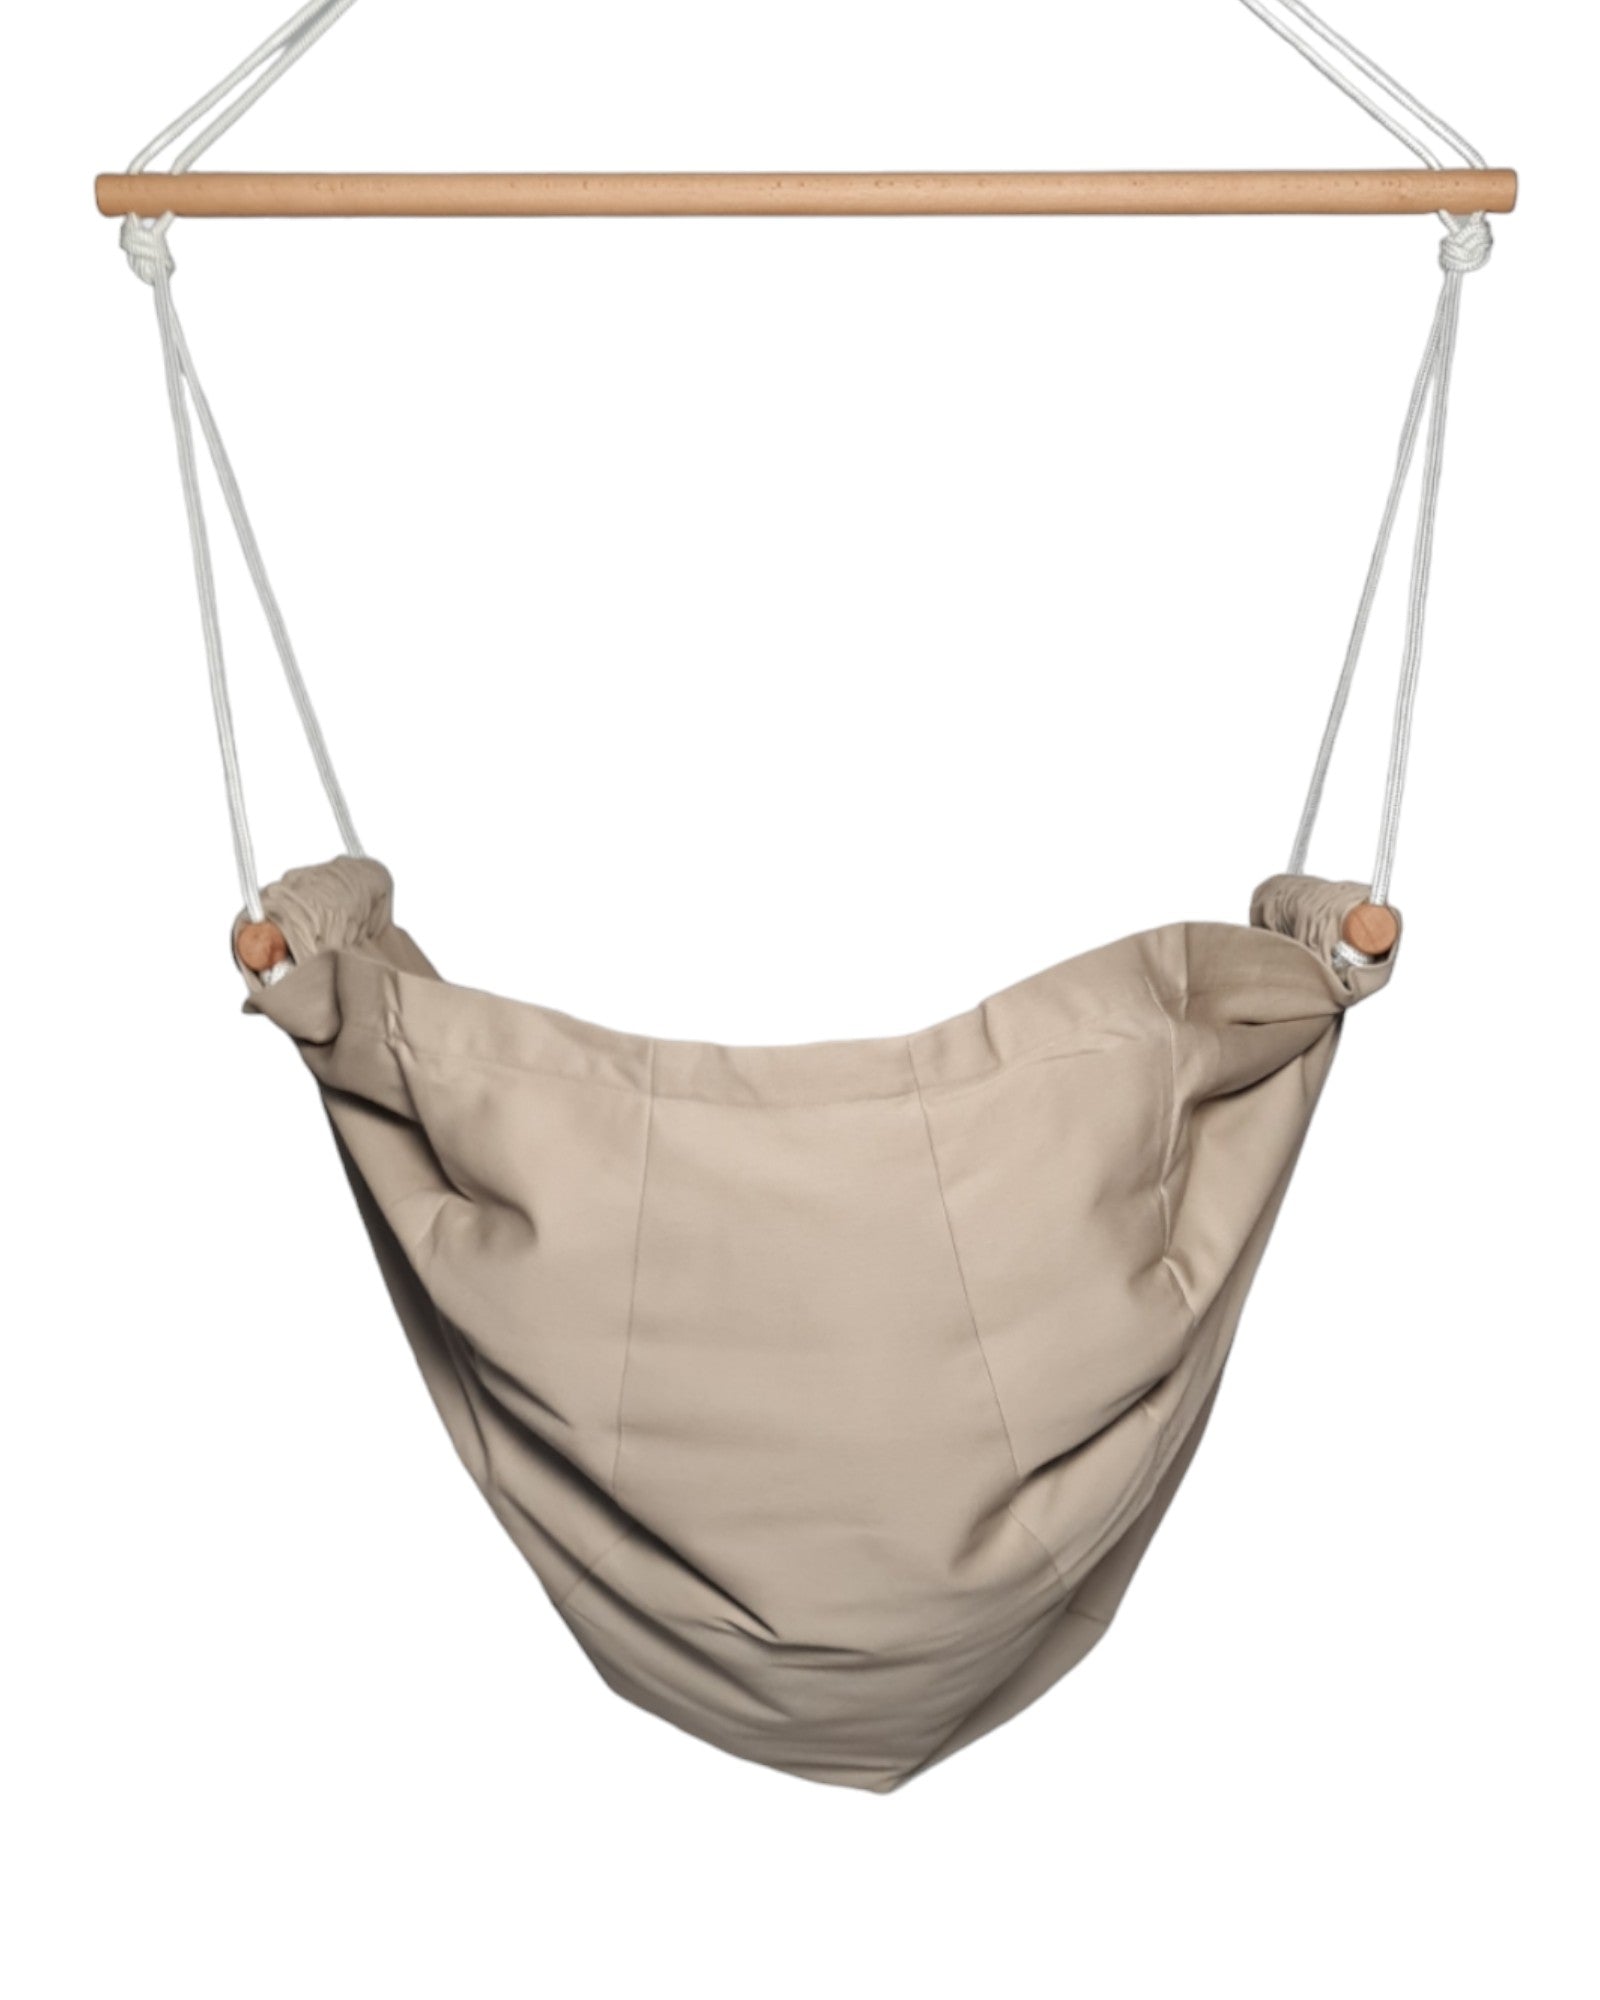 homba® zen mini hanging chair cotton beige (2-10 years)